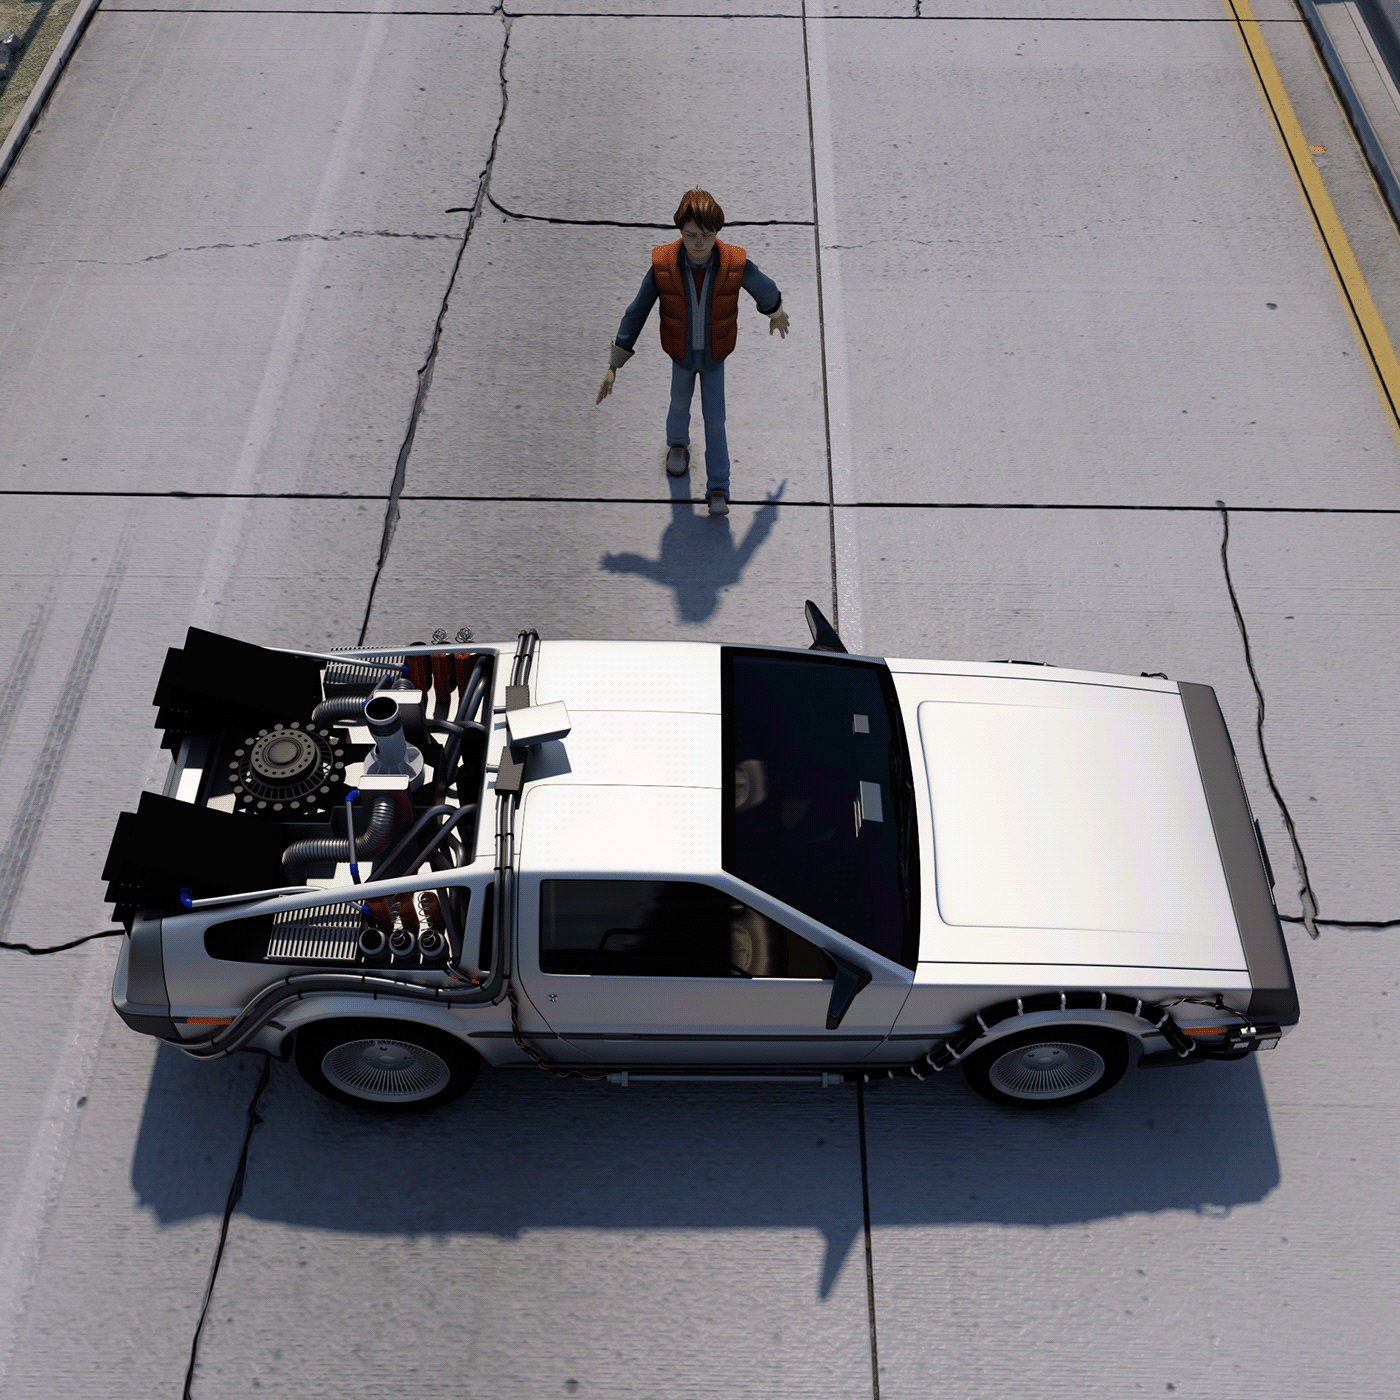 3D 3dsmax 3dvisualization CGI compositing DeLorean maquinadeltiempo Supercars timemachine vray